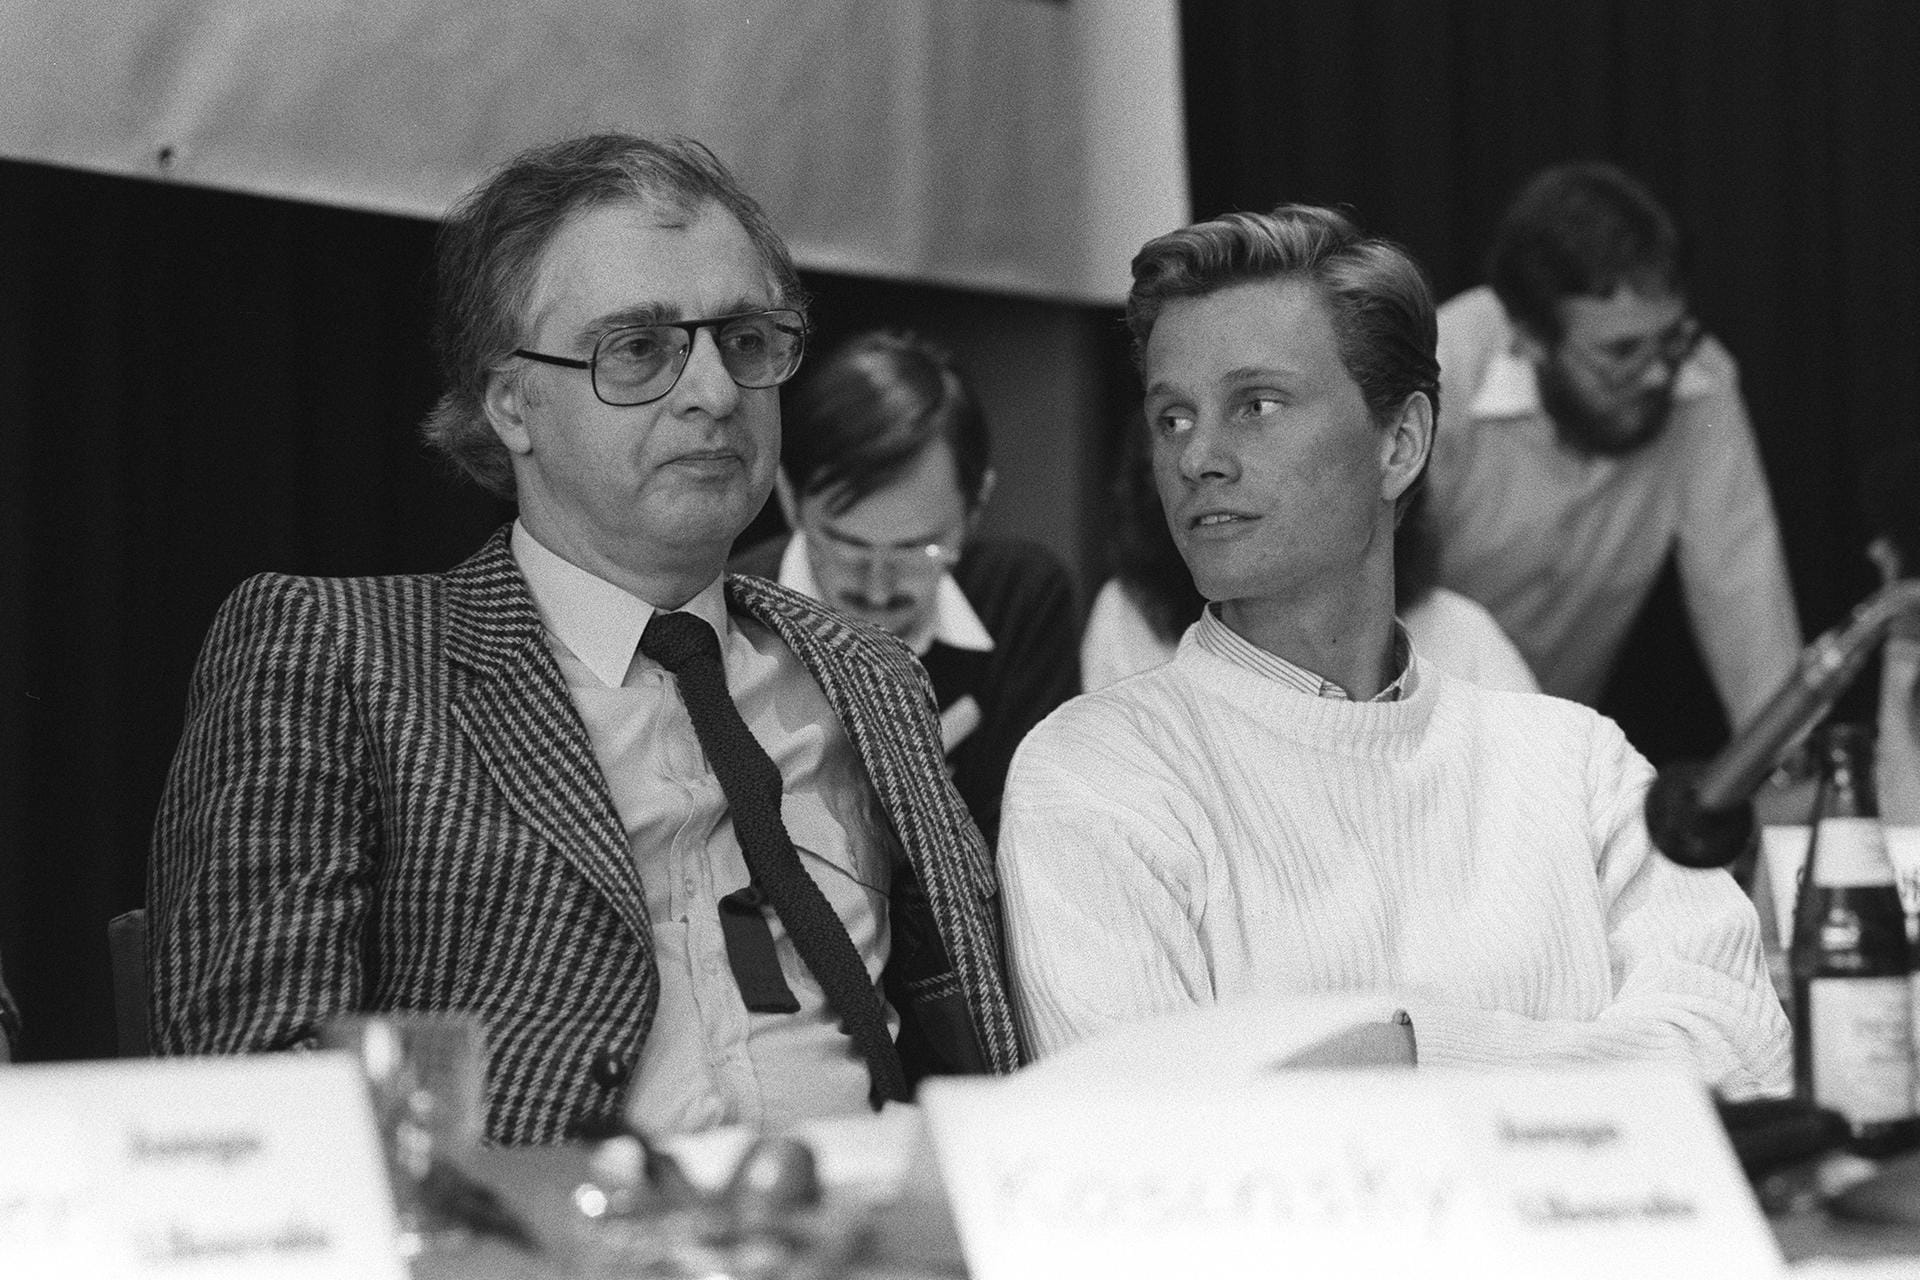 Noch ganz am Anfang: Der junge Guido Westerwelle 1985 als Vorsitzender der "Jungen Liberalen" zusammen mit Achim Rhode, dem damaligen FDP Fraktionsvositzenden. Diesen Posten wird er selbst von 2006 bis 2009 innehaben.